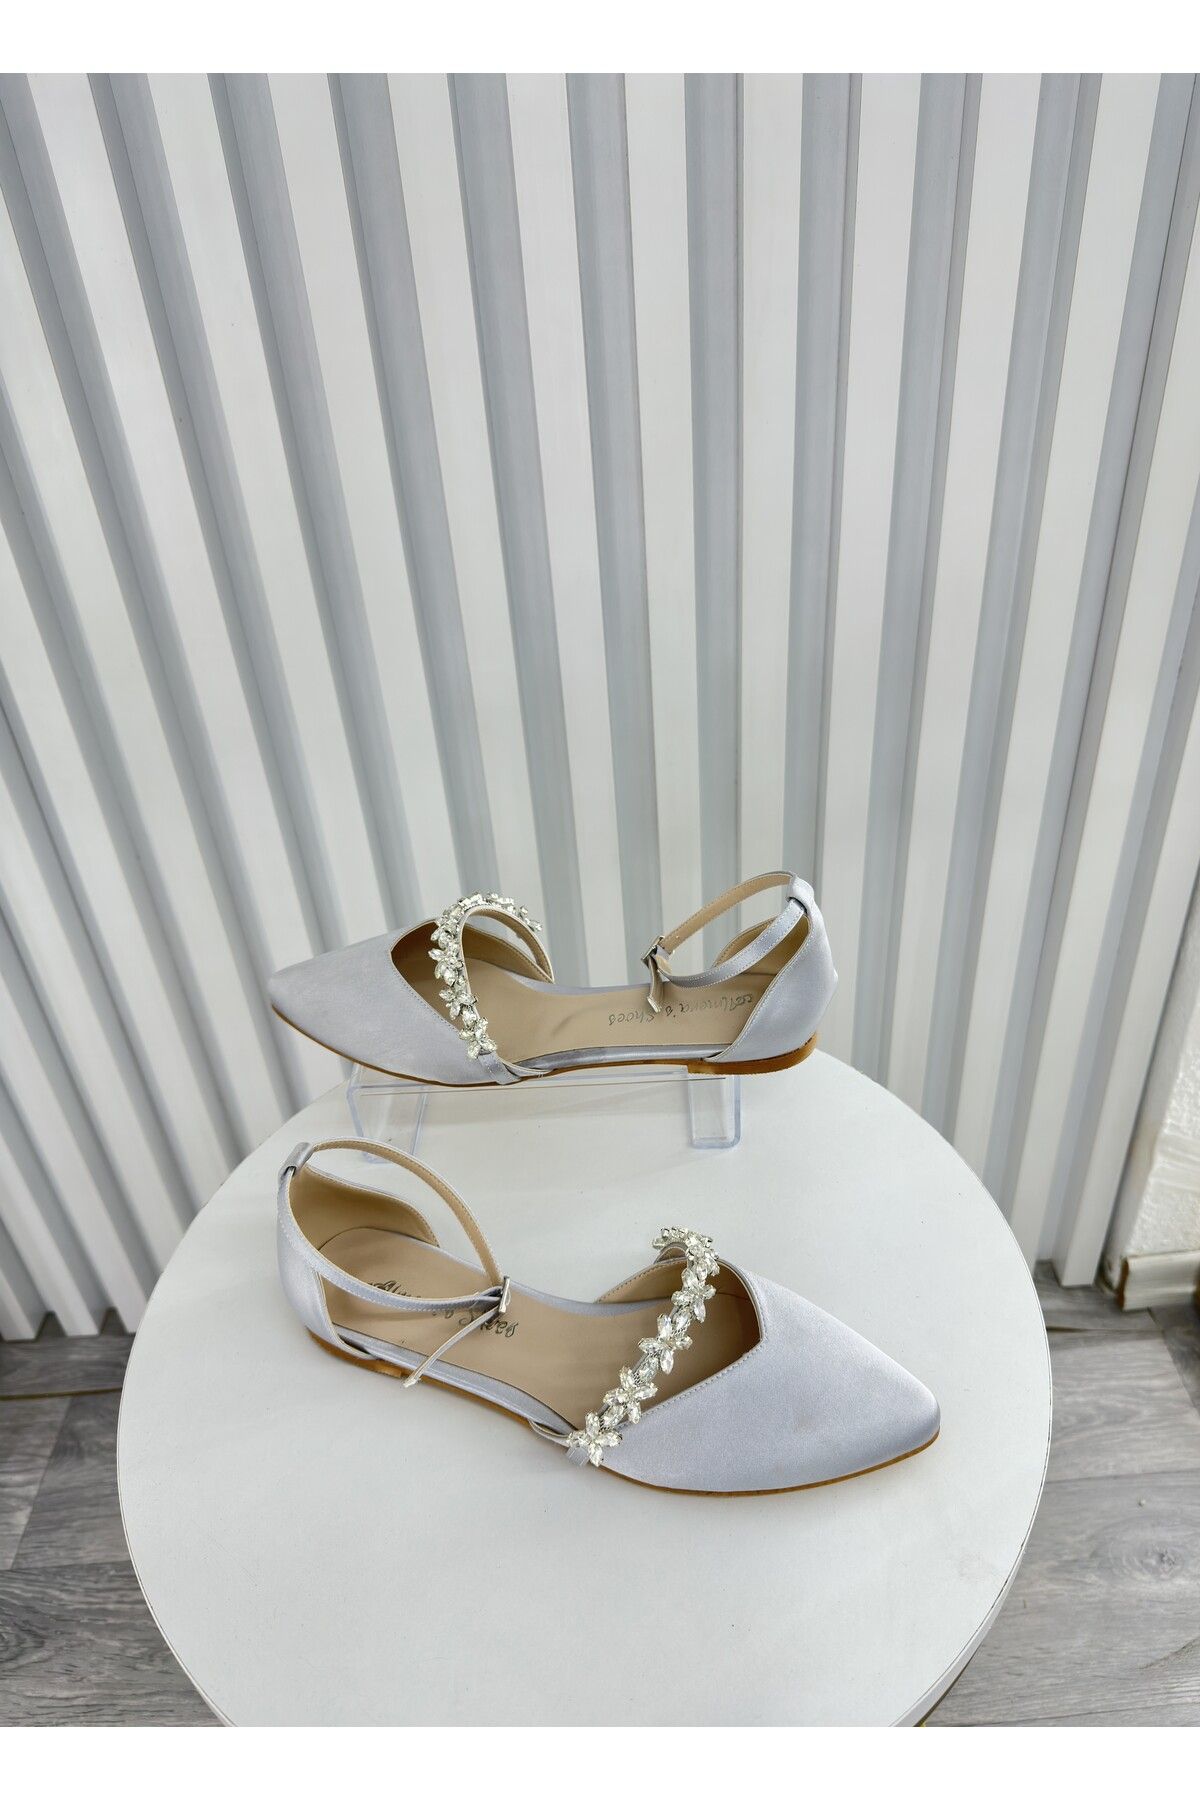 Almera's Shoes Gümüş Saten Taşlı Babet